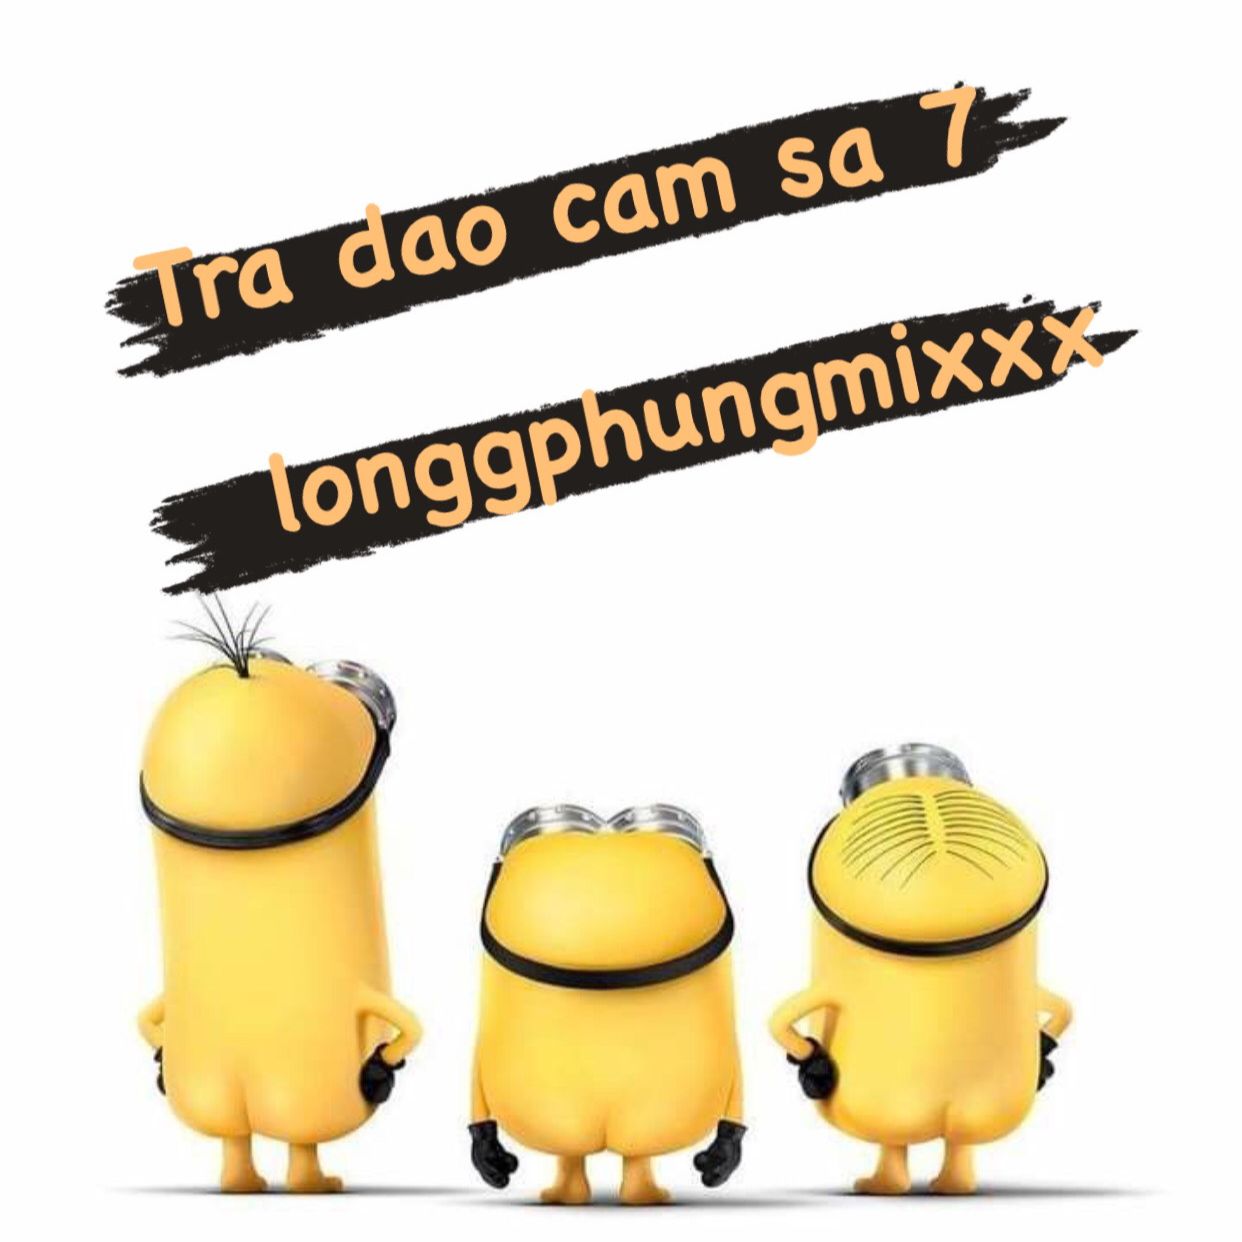 බාගත Tra Dao Cam Sa 7 - 132 longgphungmixxx